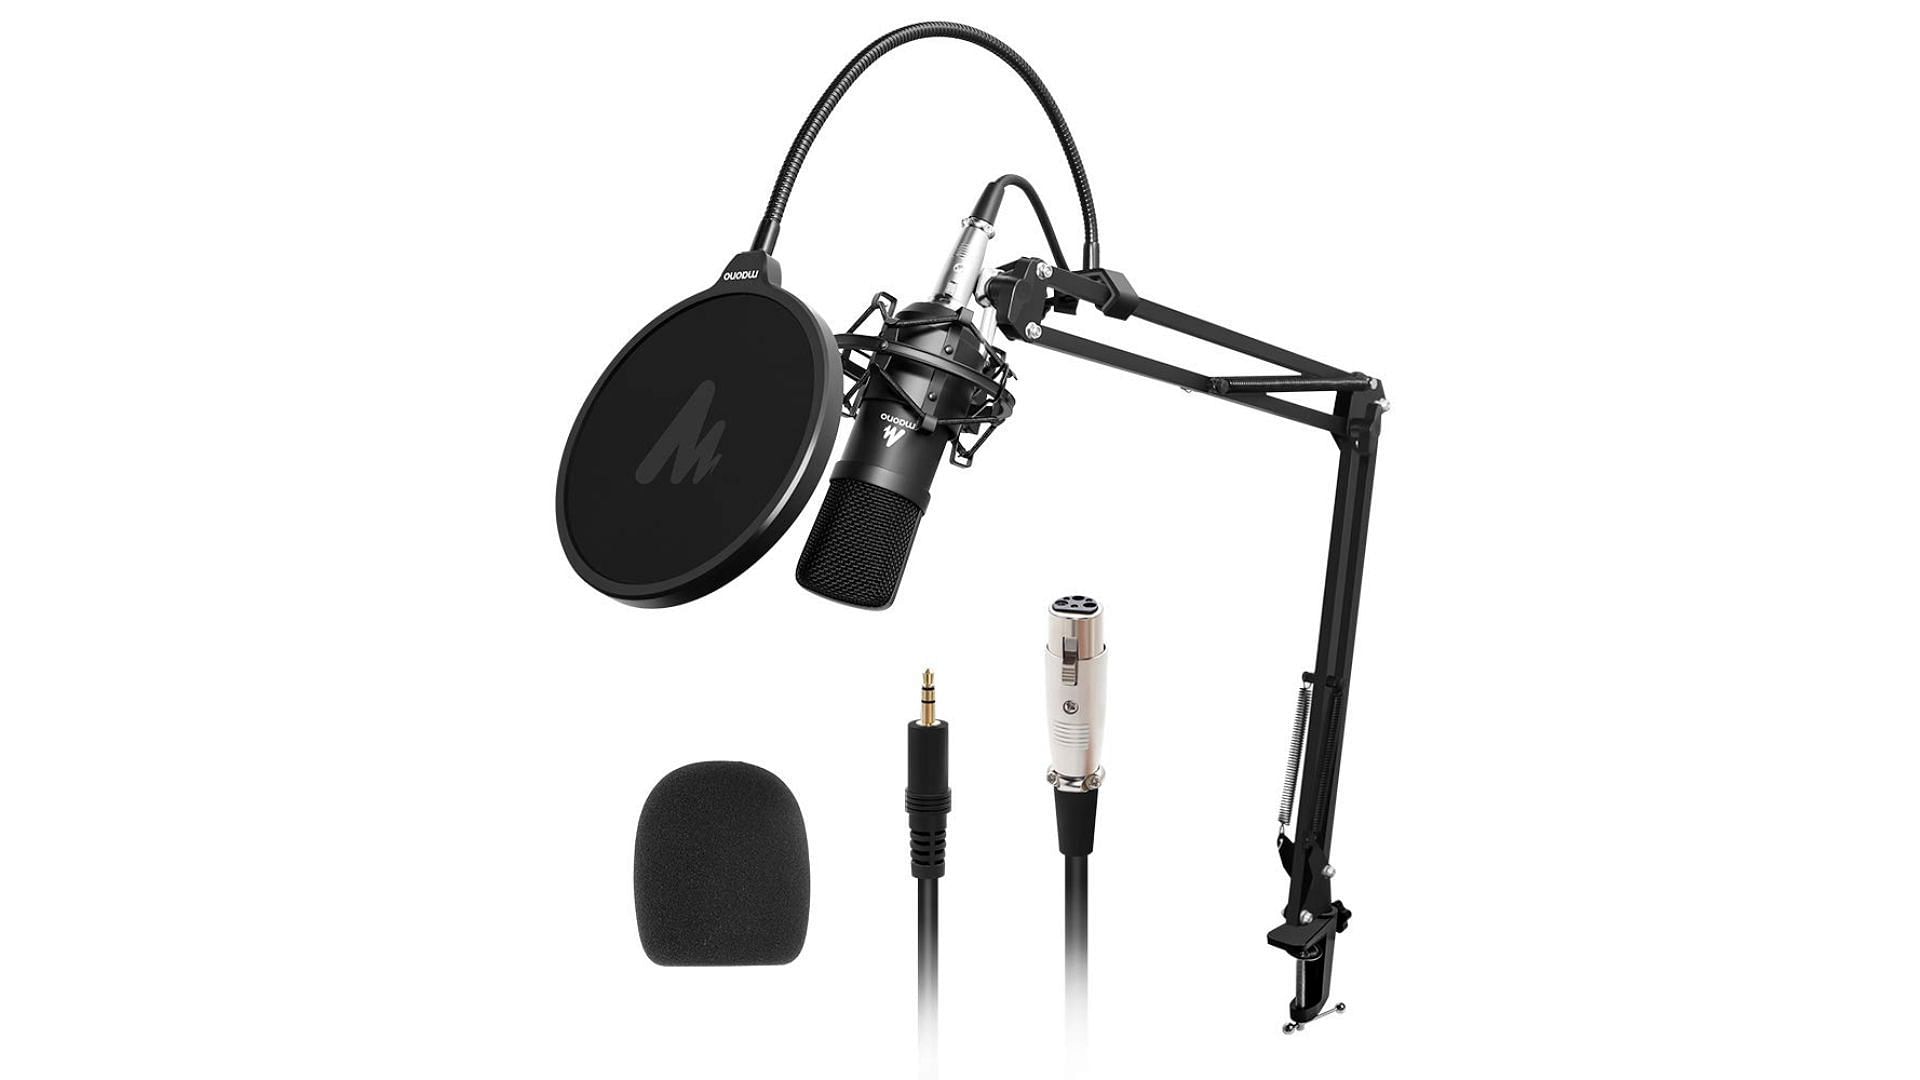 The Maono AU-A03 microphone set (Image via Amazon)